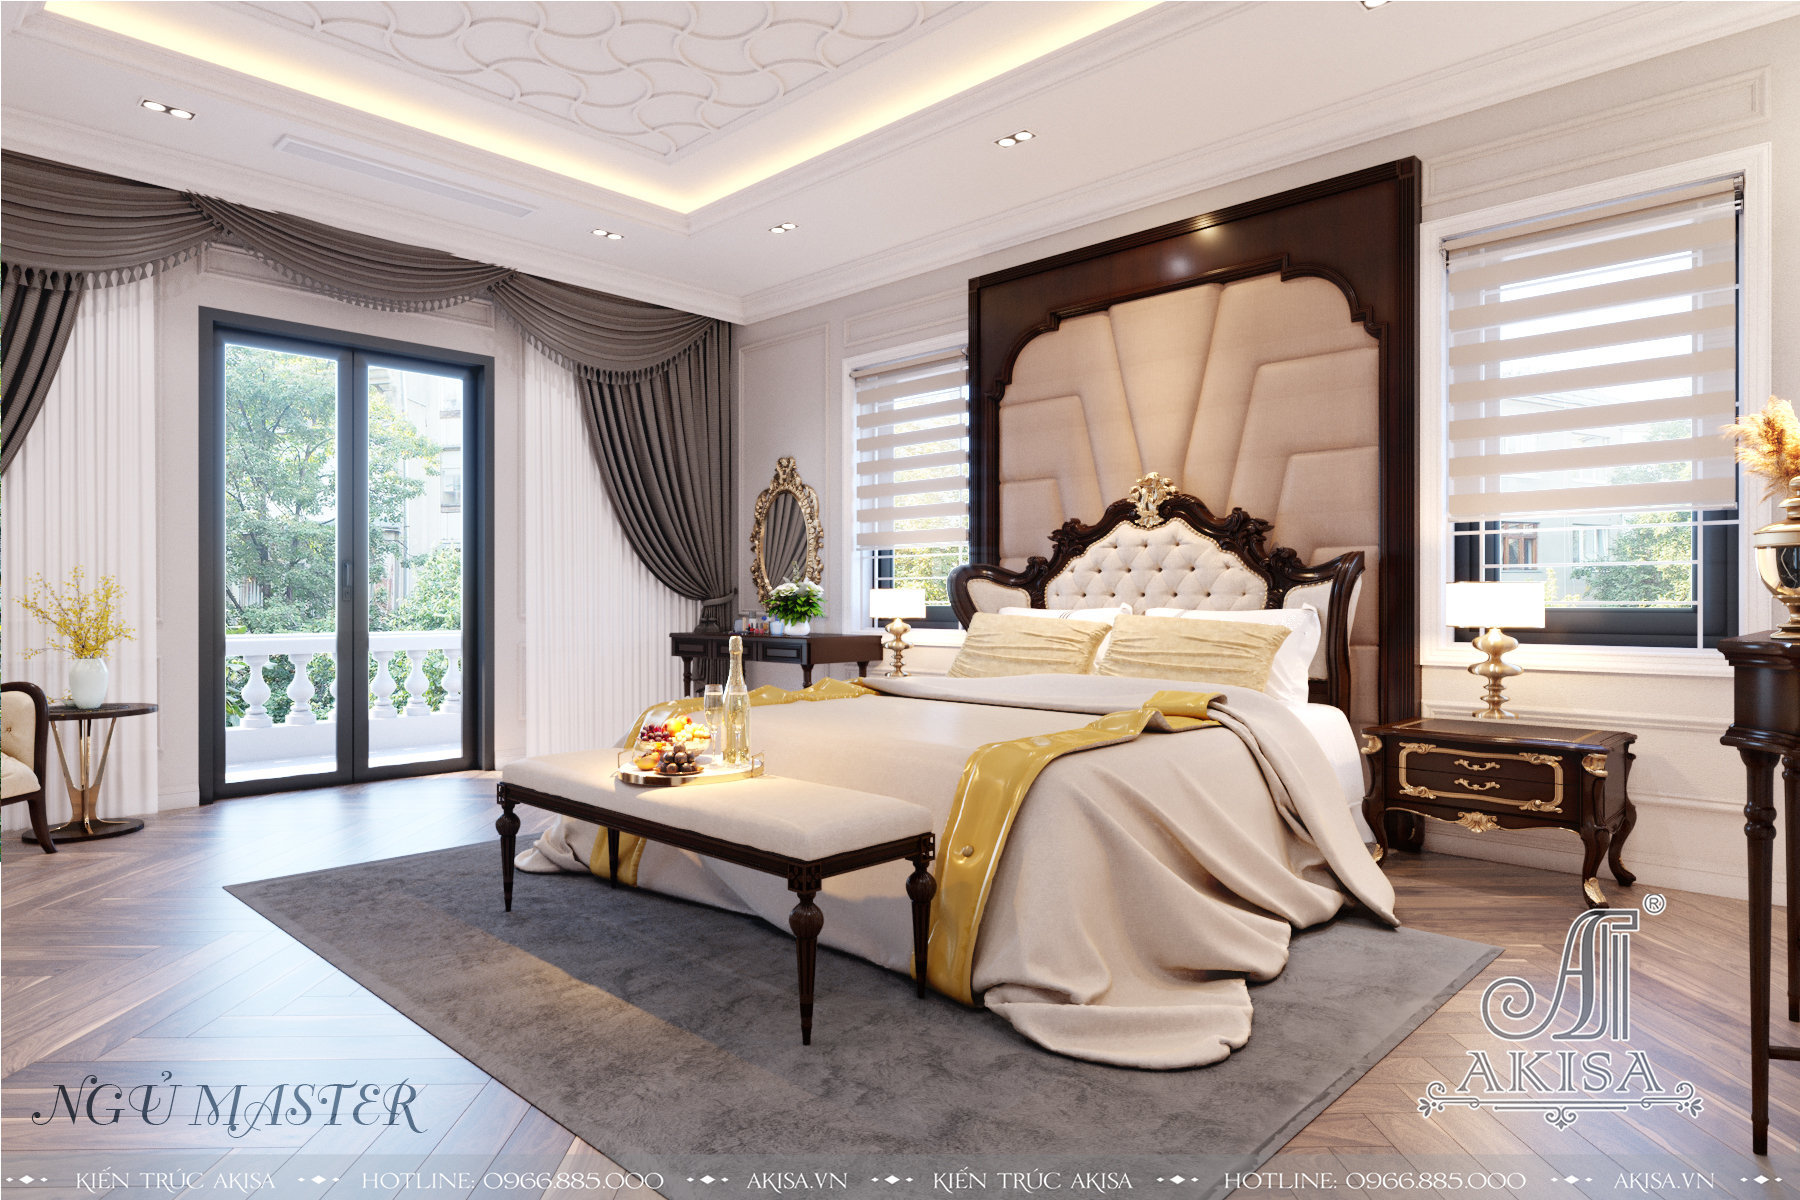 Phòng ngủ Master thông thoáng nhờ thiết kế cửa sổ thông minh tạo ánh sáng chan hòa và lưu thông gió, mang tới nguồn năng lượng tích cực cho gia chủ